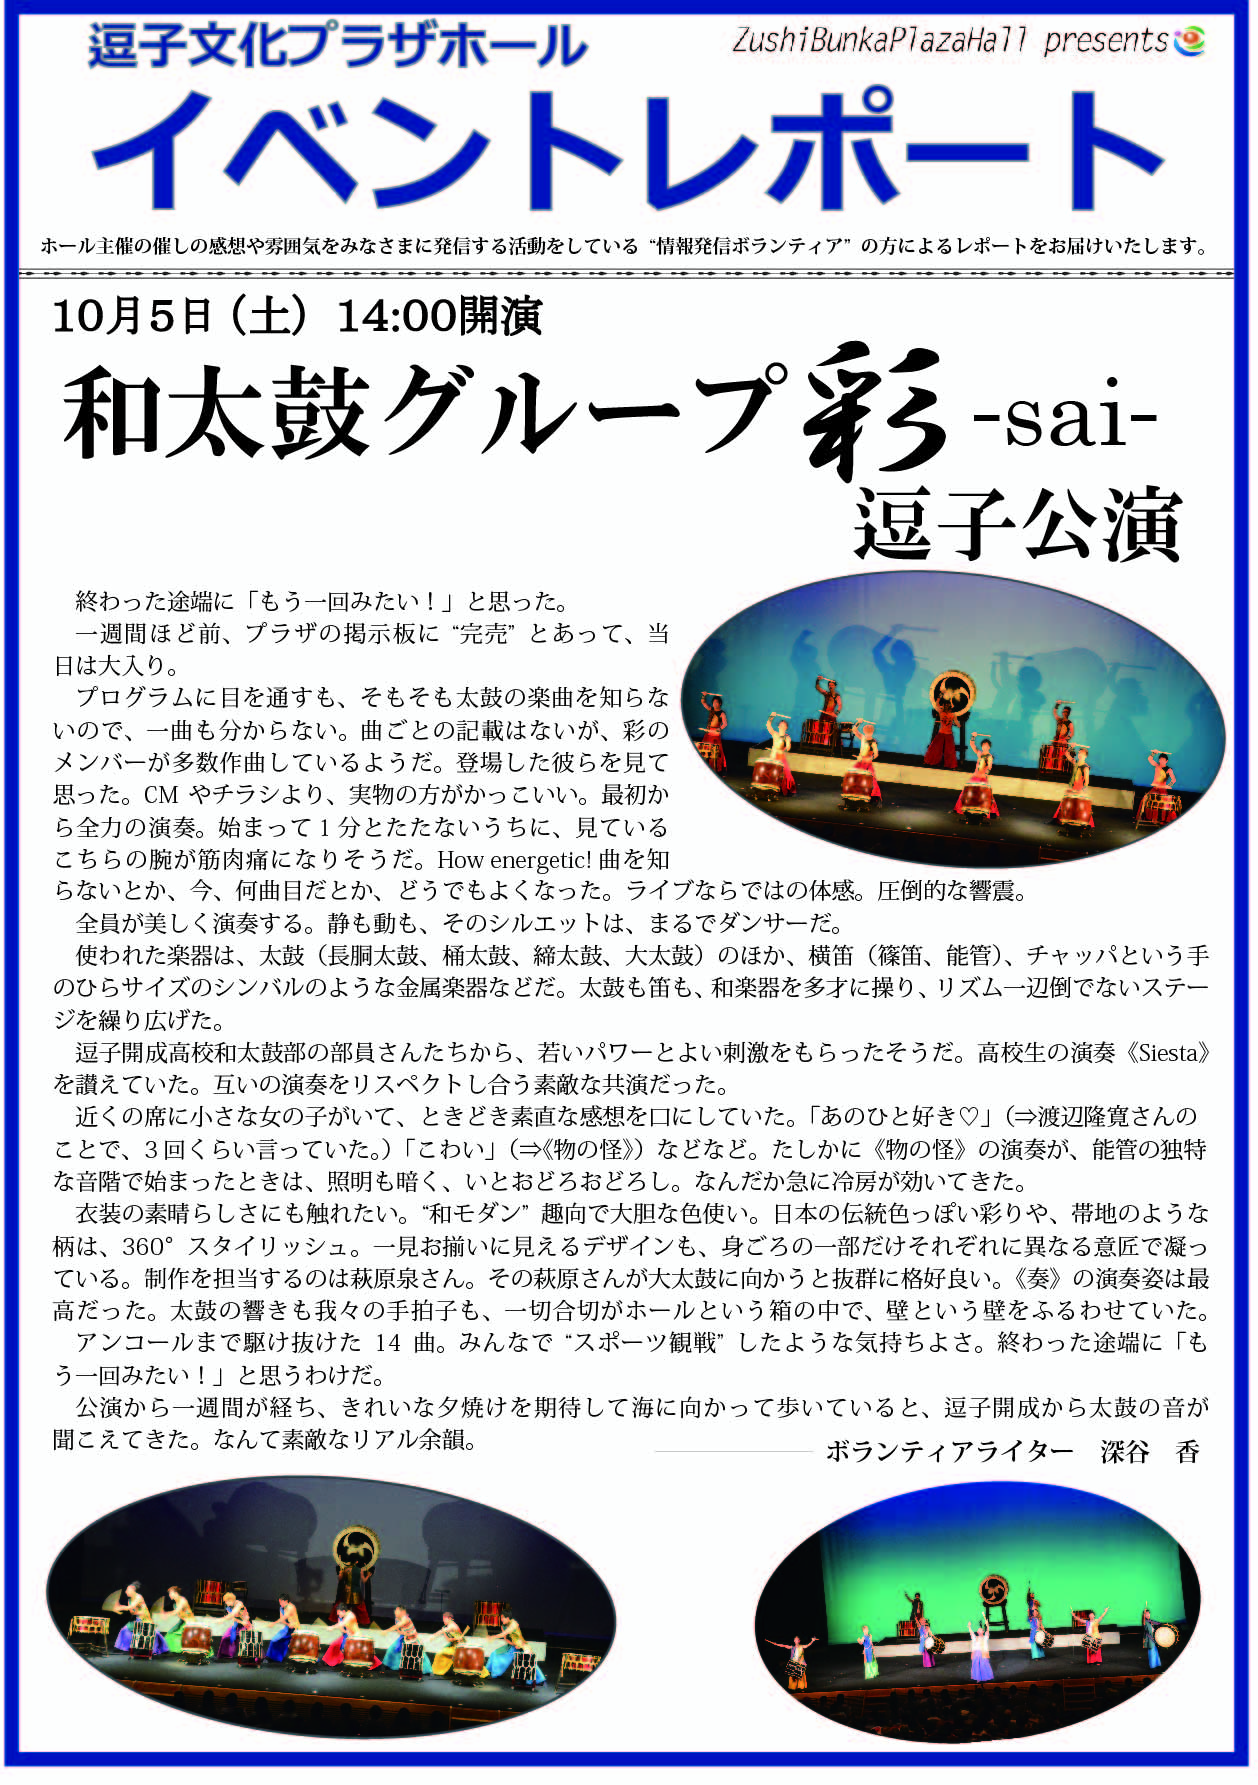 ★イベントレポート「和太鼓グループ彩-sai- 逗子公演」2019年10月5日（土）開催